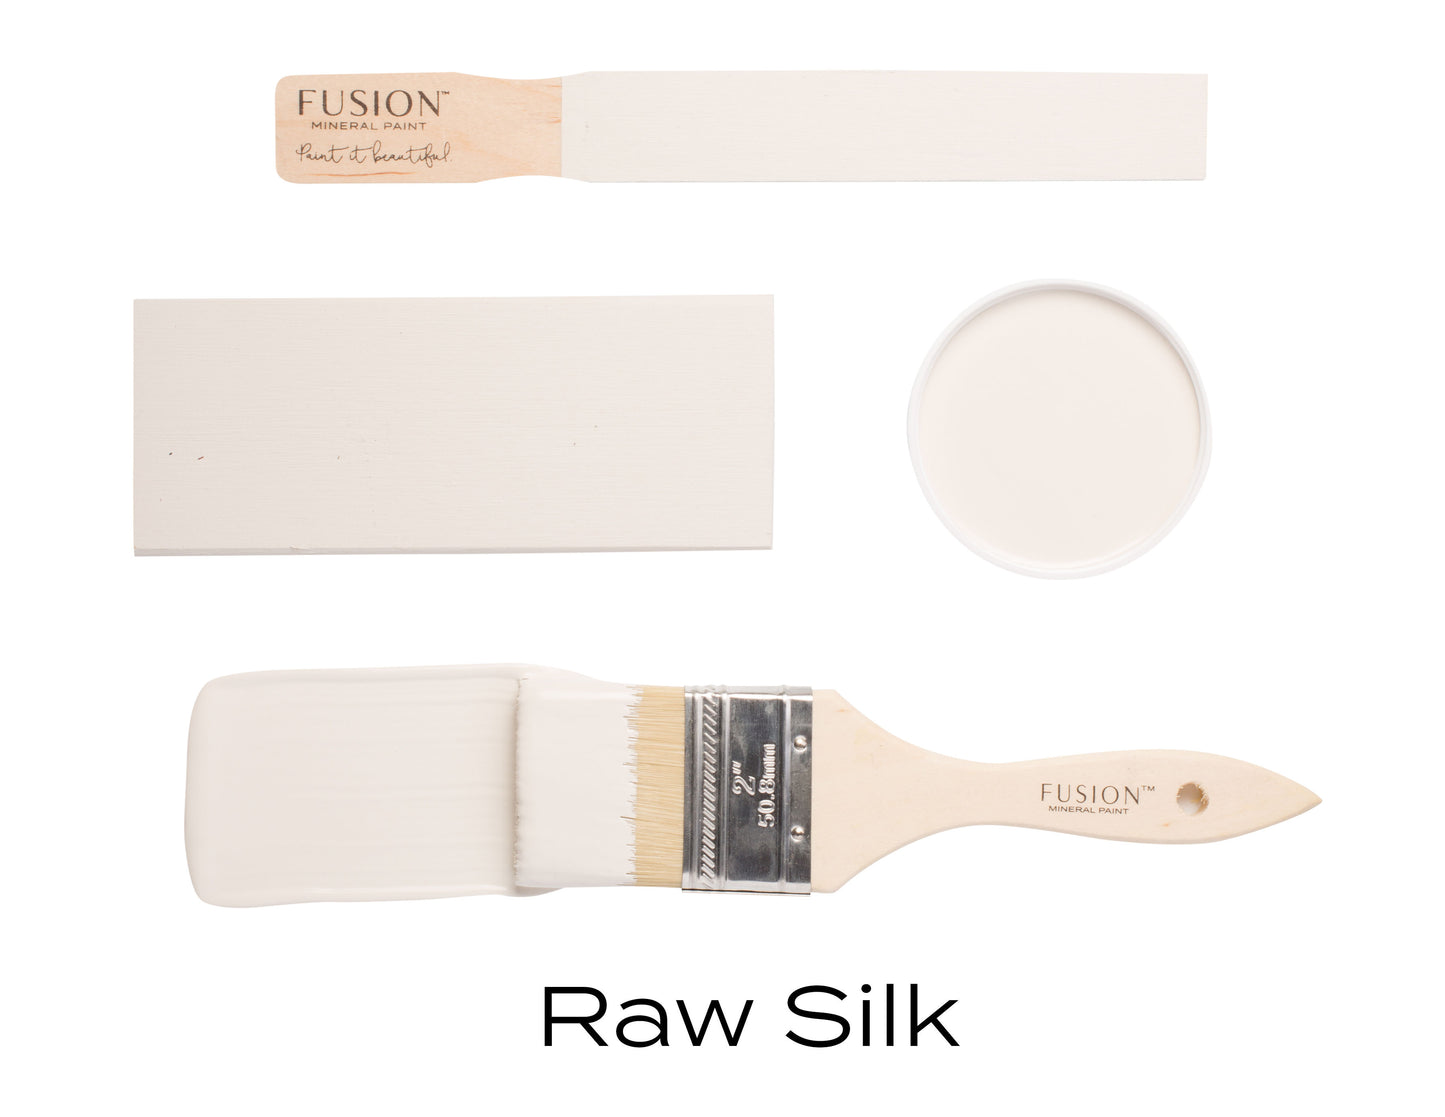 Raw Silk by Fusion